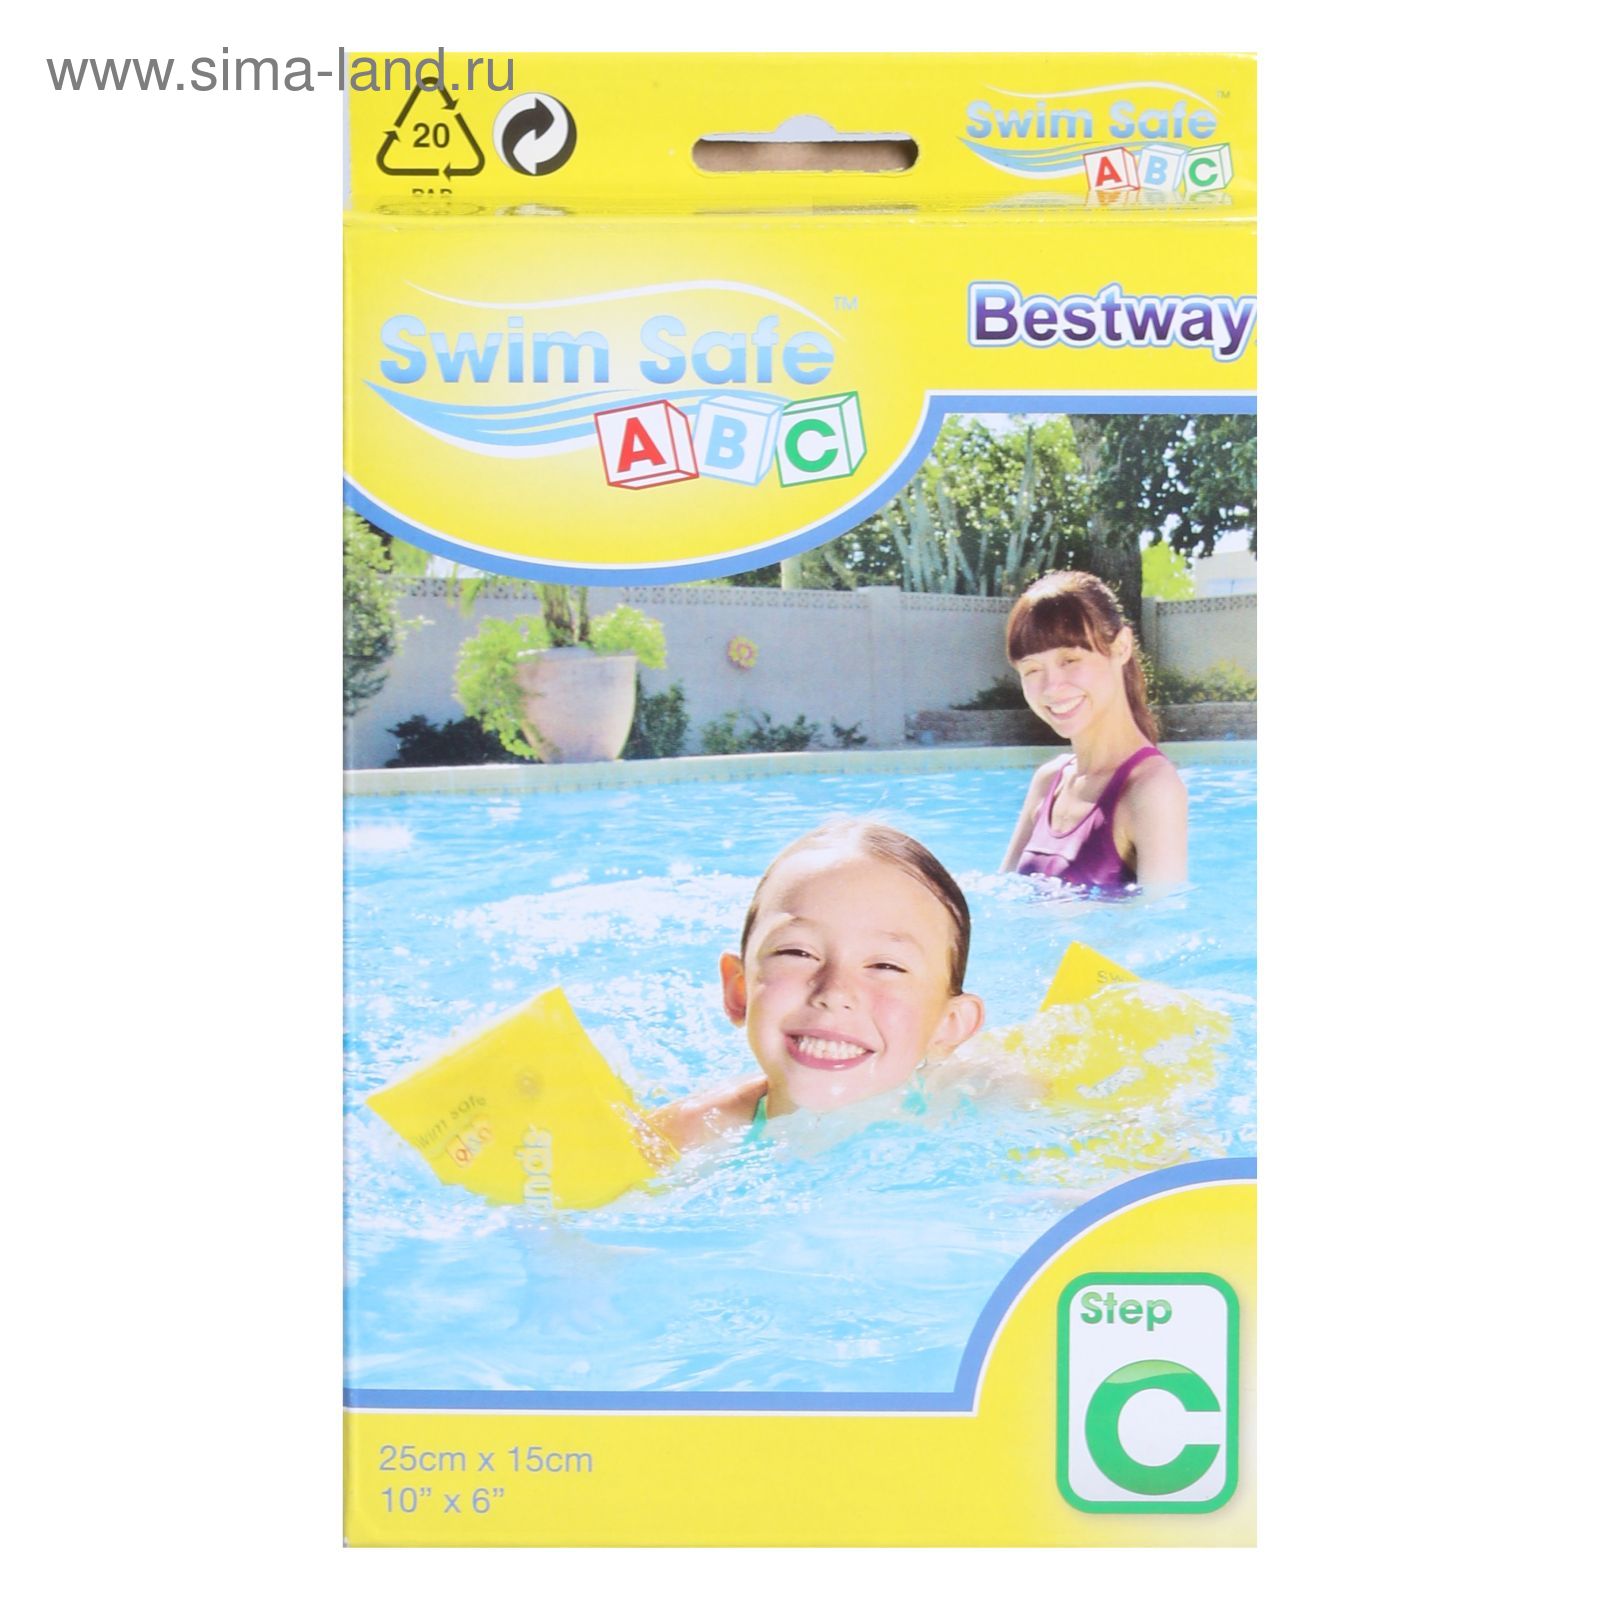 Нарукавники для плавания Swim Safe, 25 х 15 см, 3-6 лет Bestway